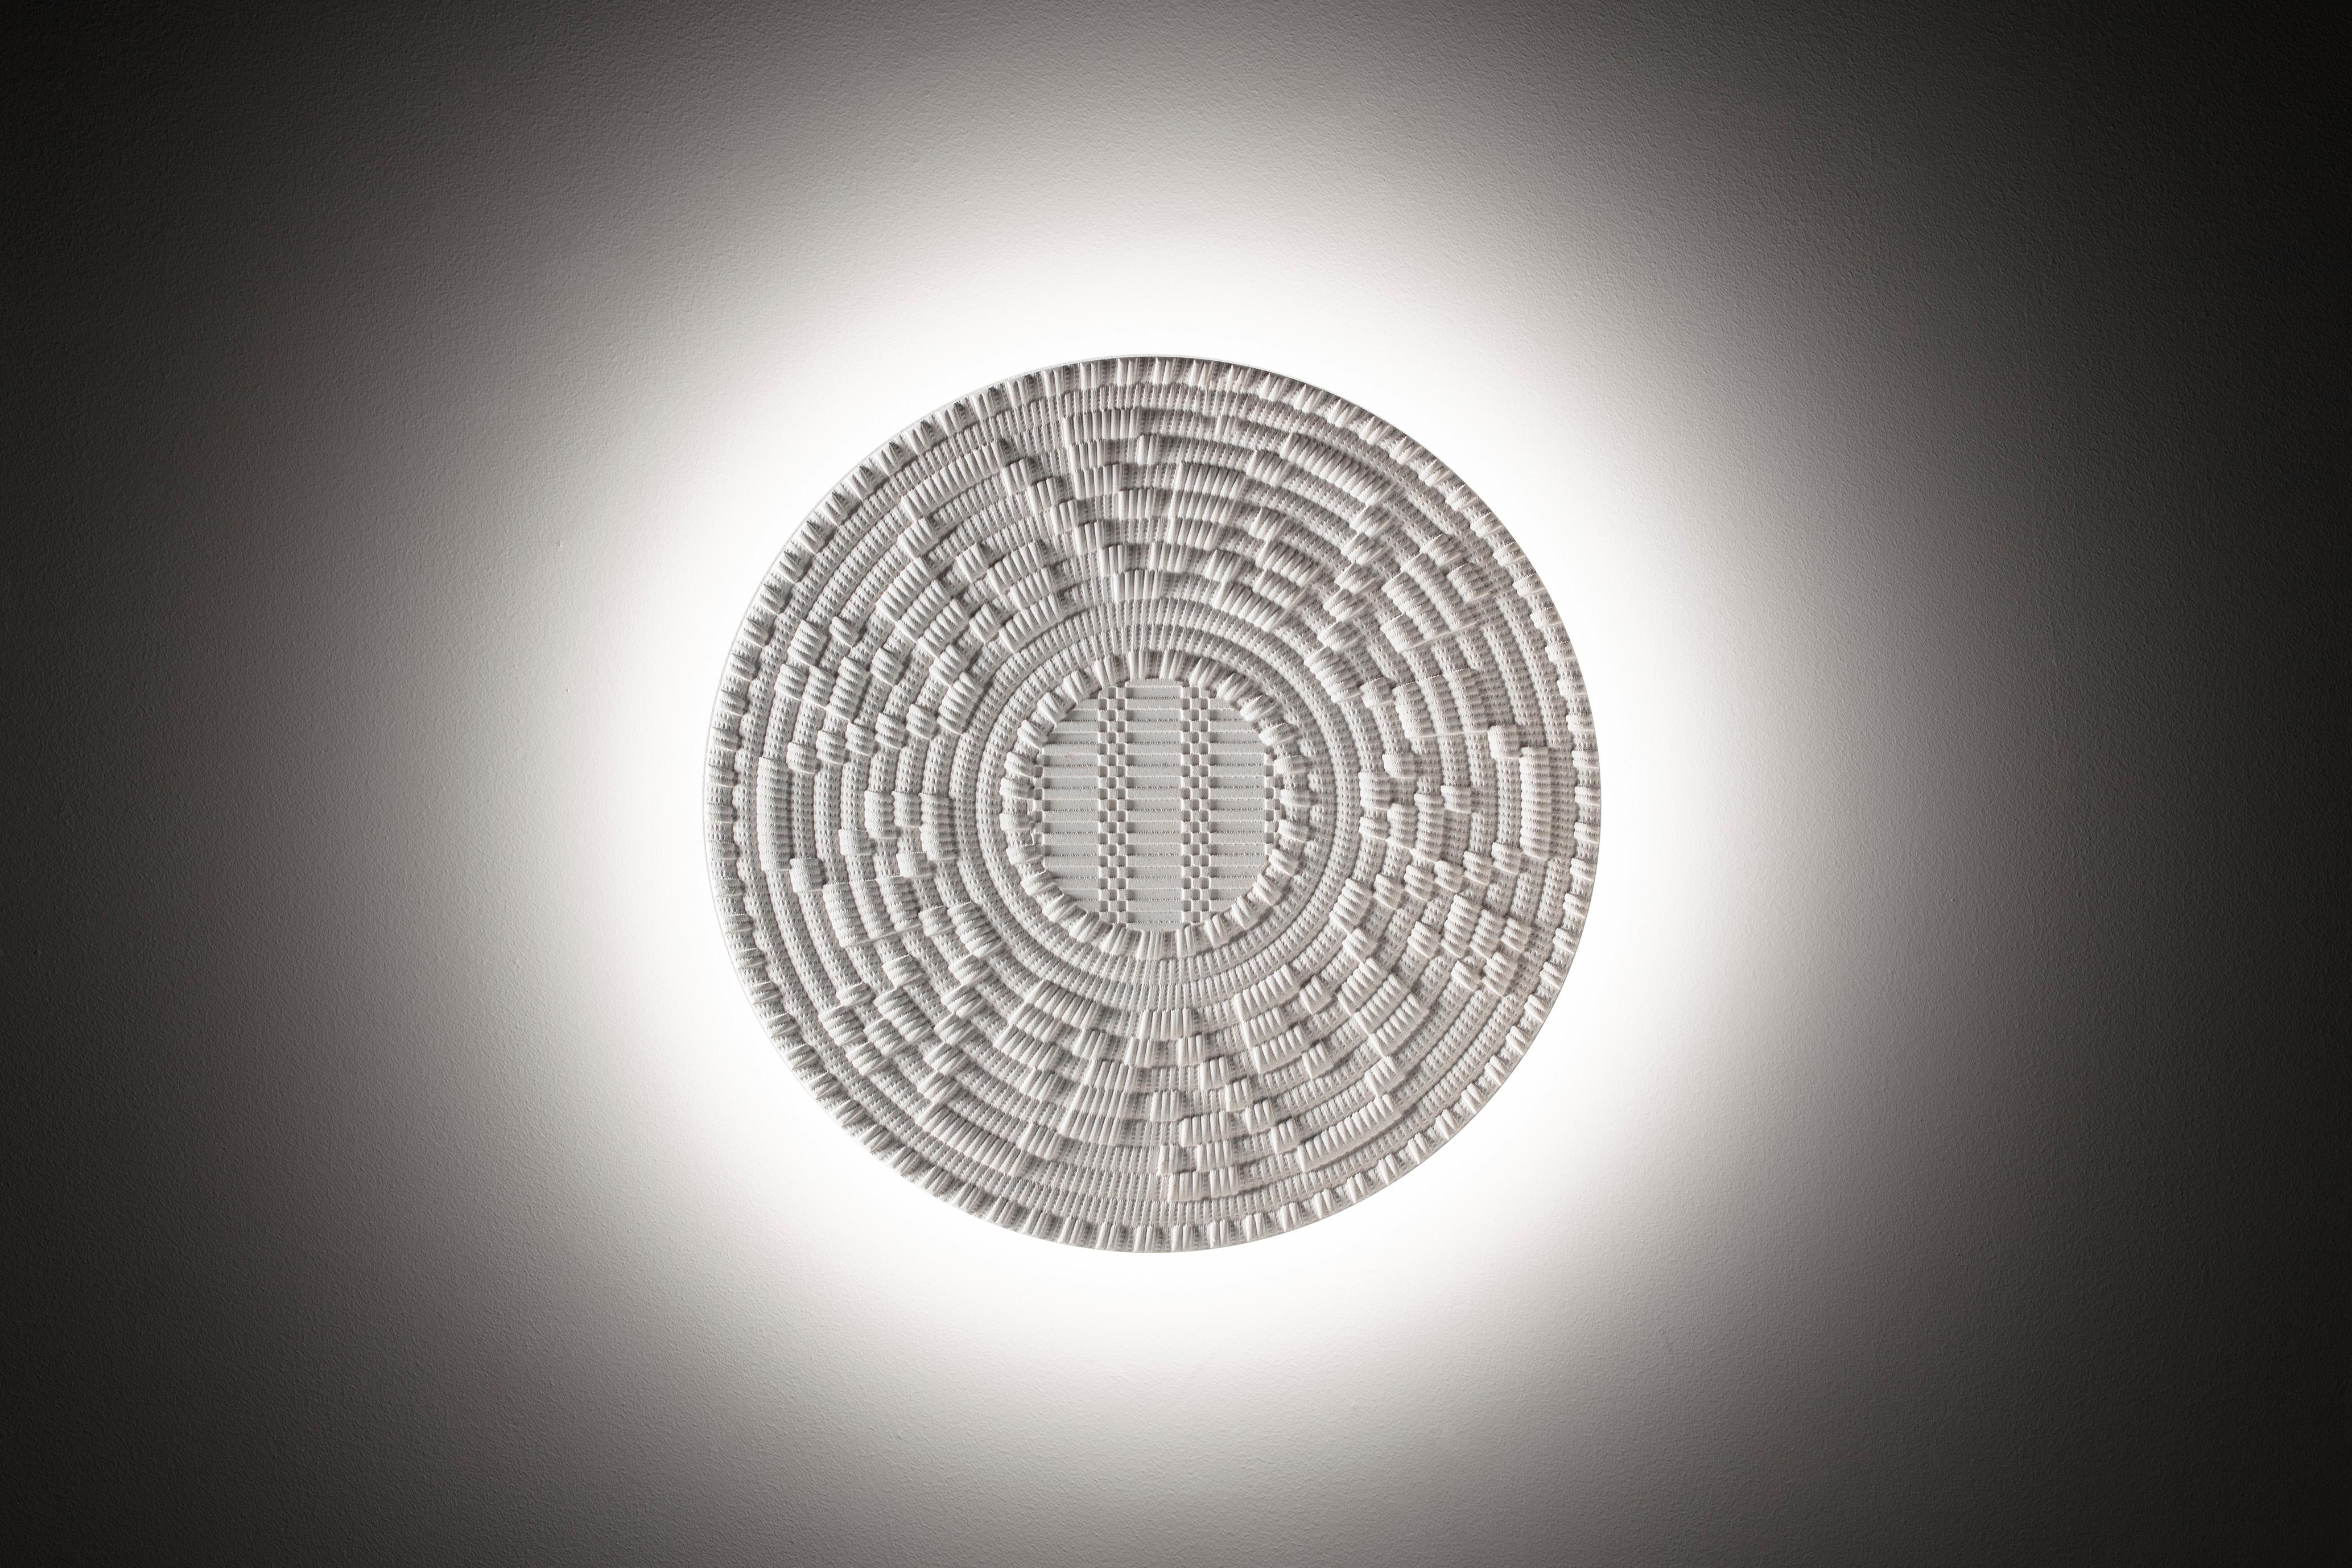 Corbulas 90
Diese prächtige, dreidimensionale runde Tafel ist aus Bianco Diocleziano-Marmor gefertigt. Das auf der Oberfläche reproduzierte Muster erinnert an die kunstvolle Unterseite traditioneller sardischer Körbe, die zum Aufbewahren und